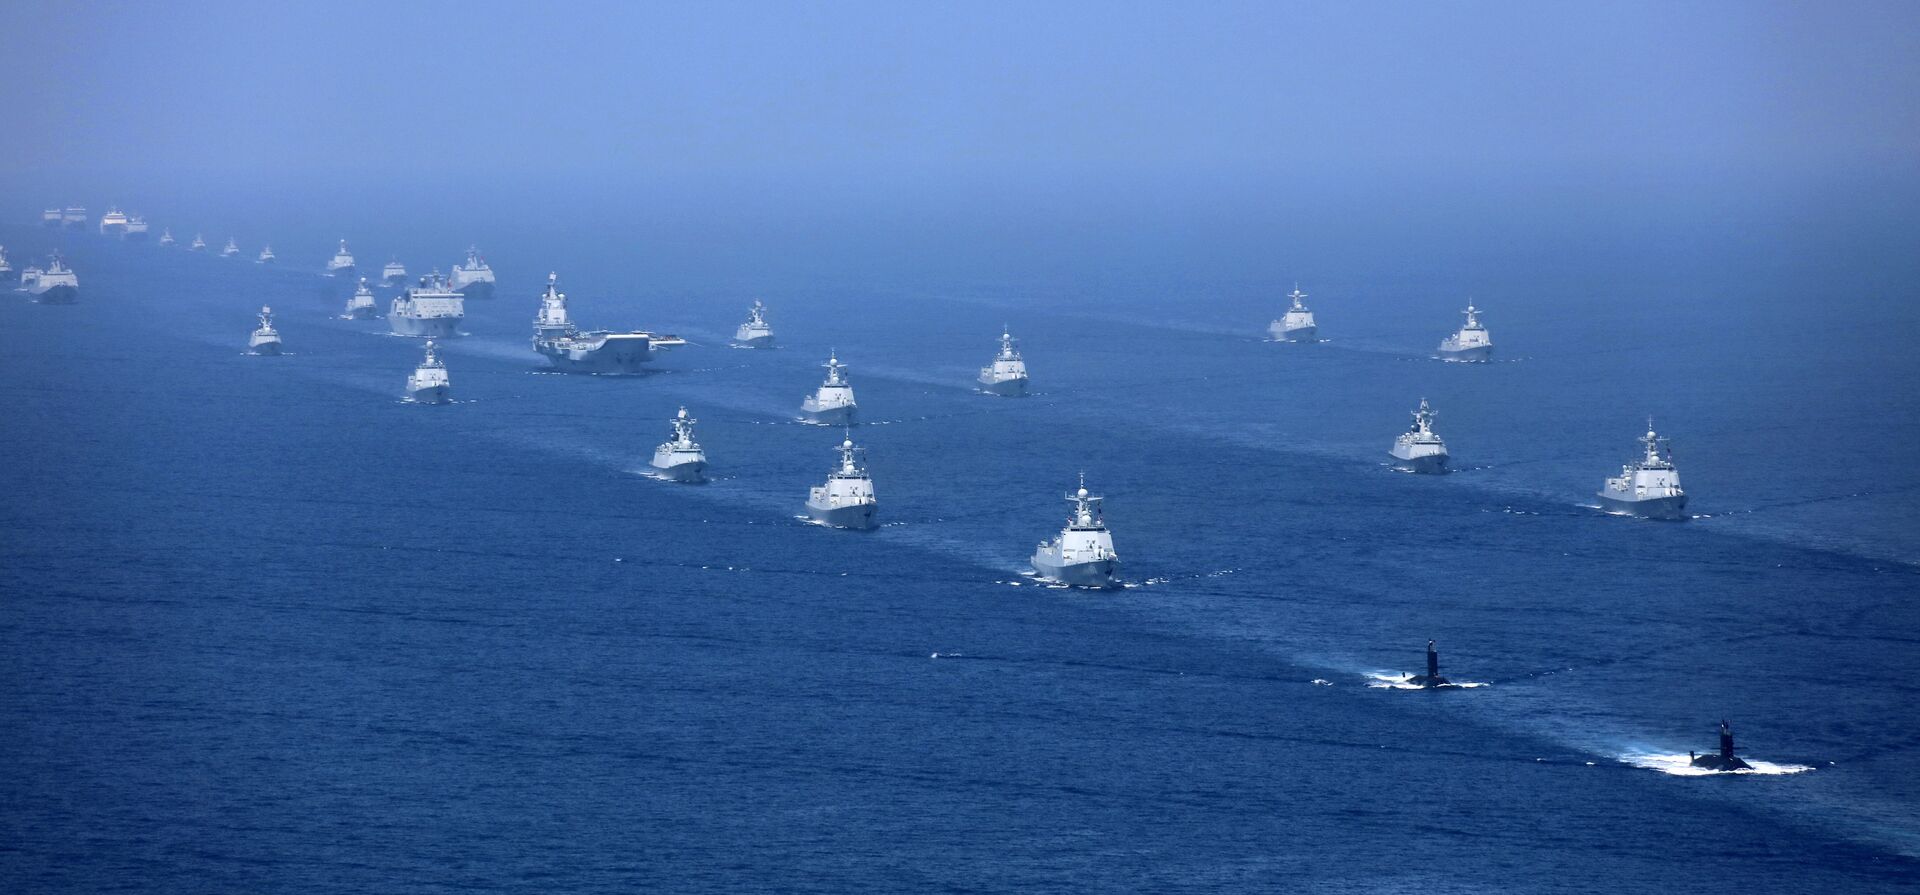 Marinha da China realiza série de exercícios, sugerindo movimentos para conter EUA, diz mídia - Sputnik Brasil, 1920, 18.05.2021